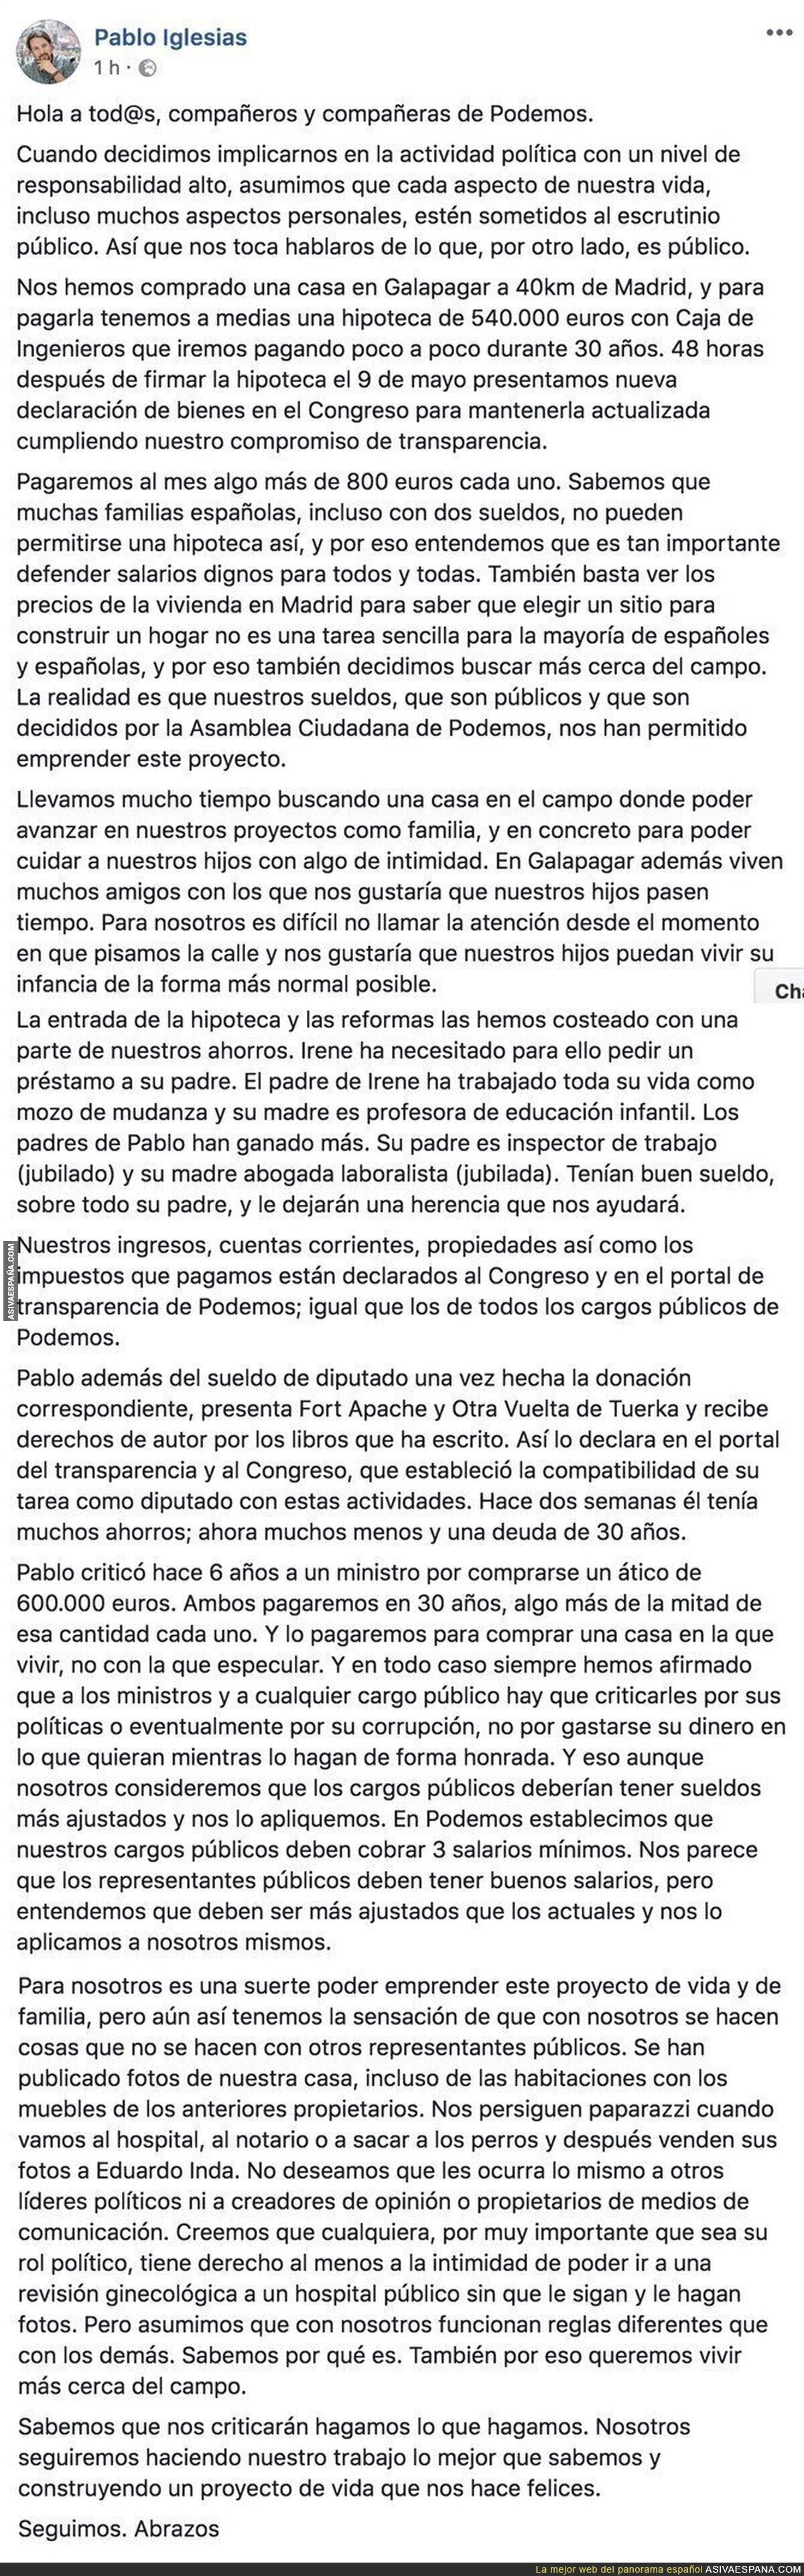 La carta de Pablo Iglesias aclarando la compra de su chalet